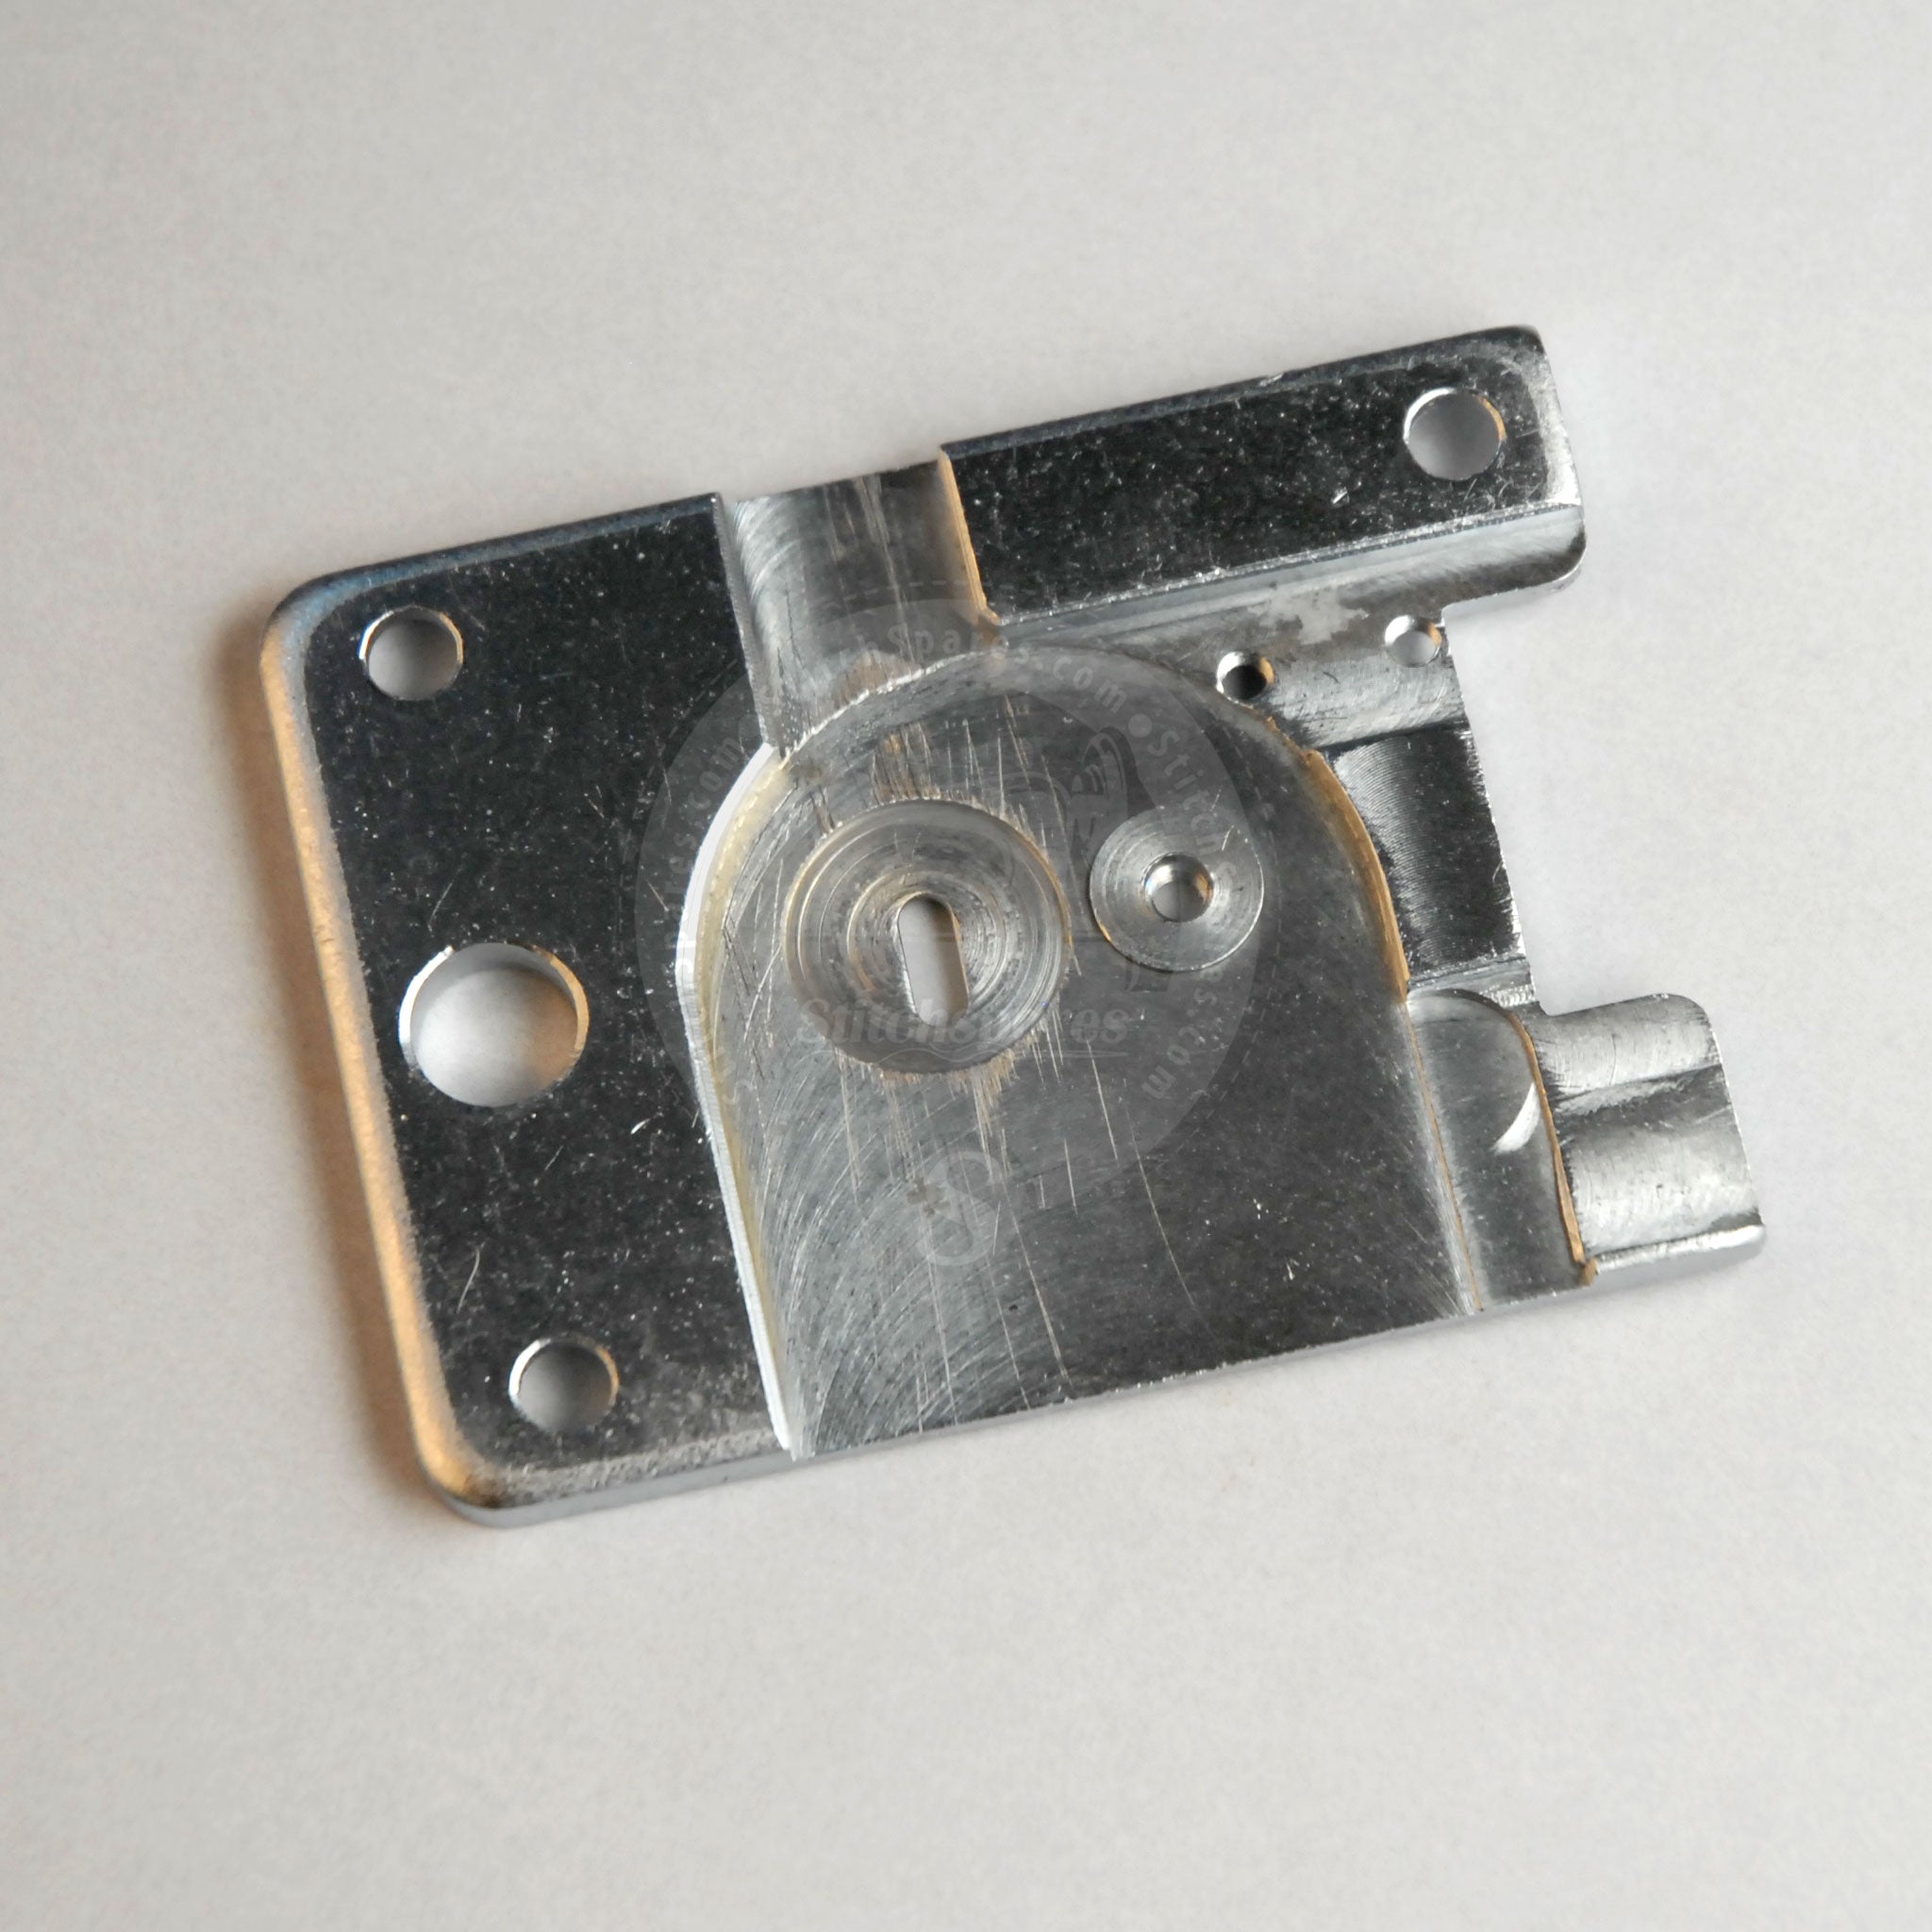 B1241-373-000 गले की प्लेट जूकी बटन-सिलाई मशीन